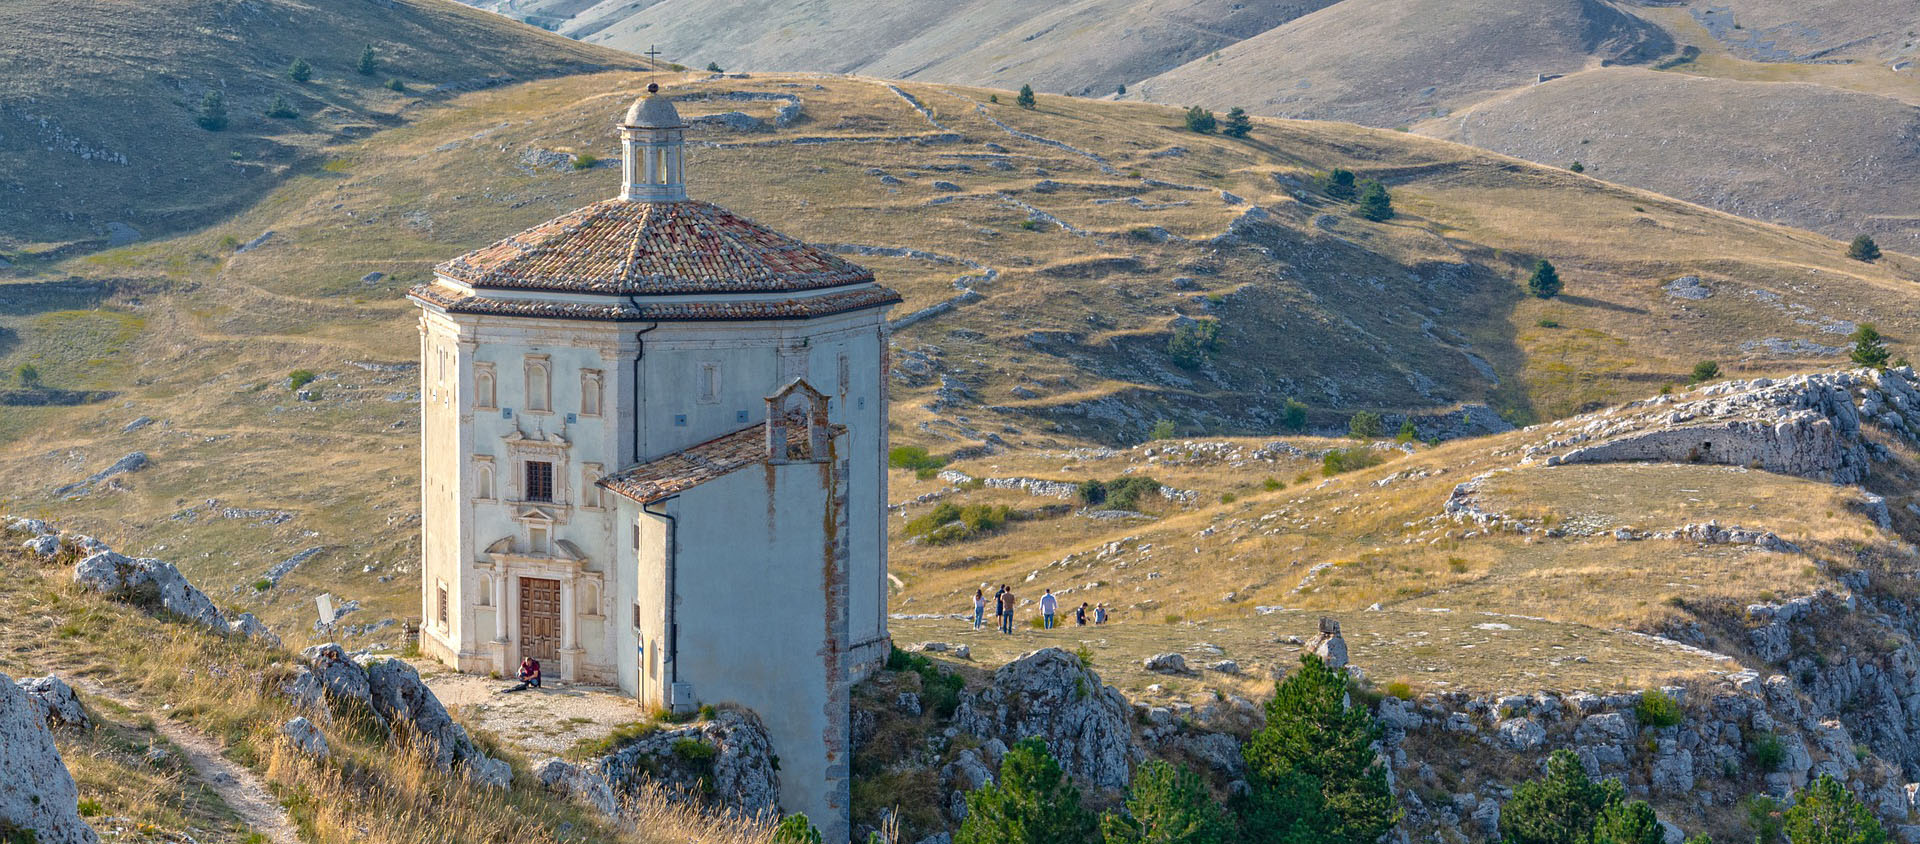 Plusieurs diocèses italiens veulent lutter contre la désertification des territoires, dont les Abruzzes. | © Pixabay